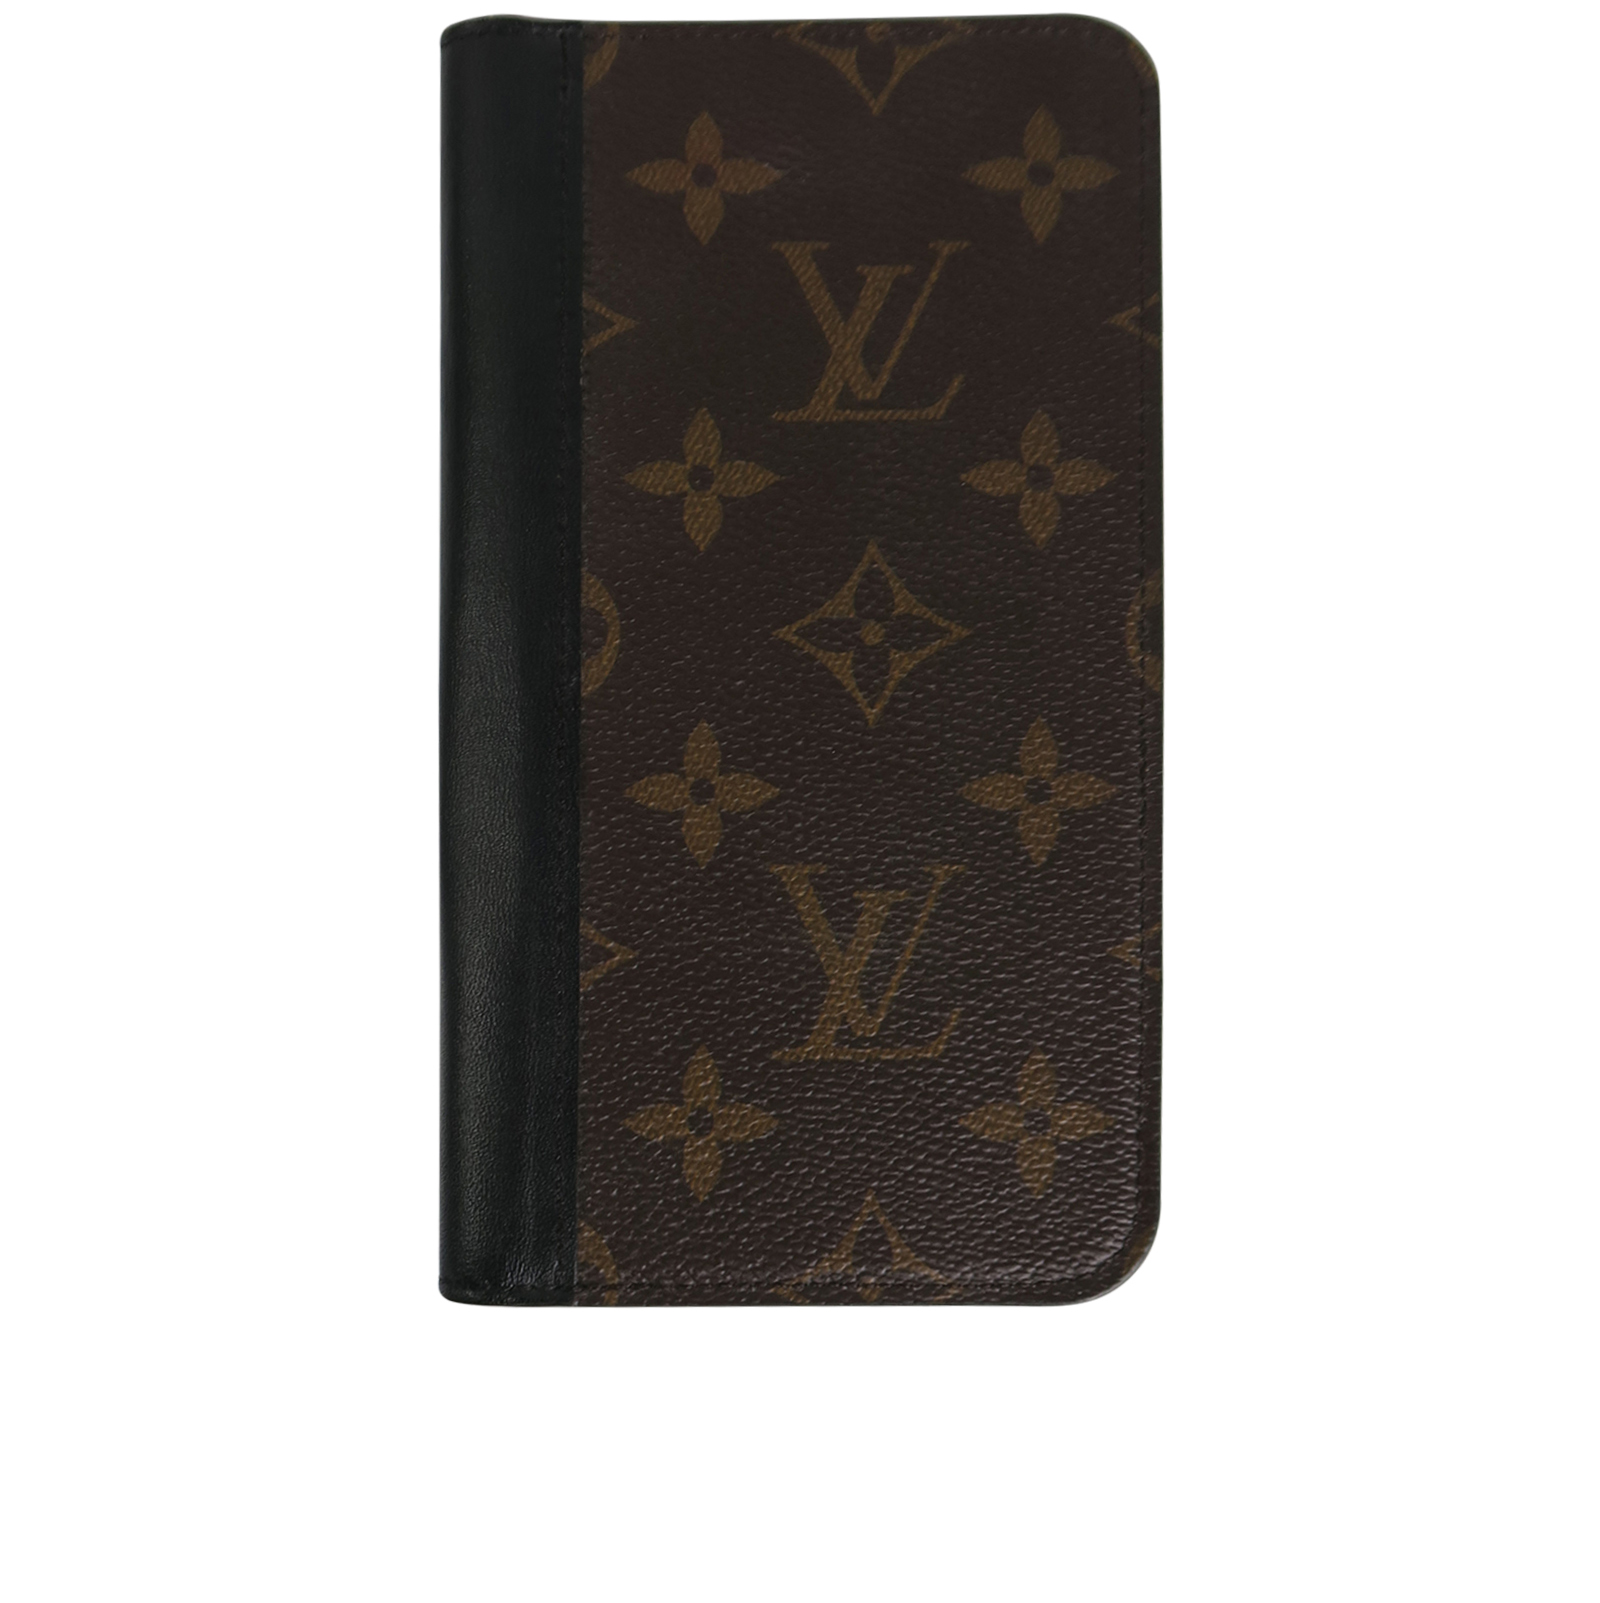 Louis Vuitton iPhone 11 Pro Case - Luxury Brand Case Shop